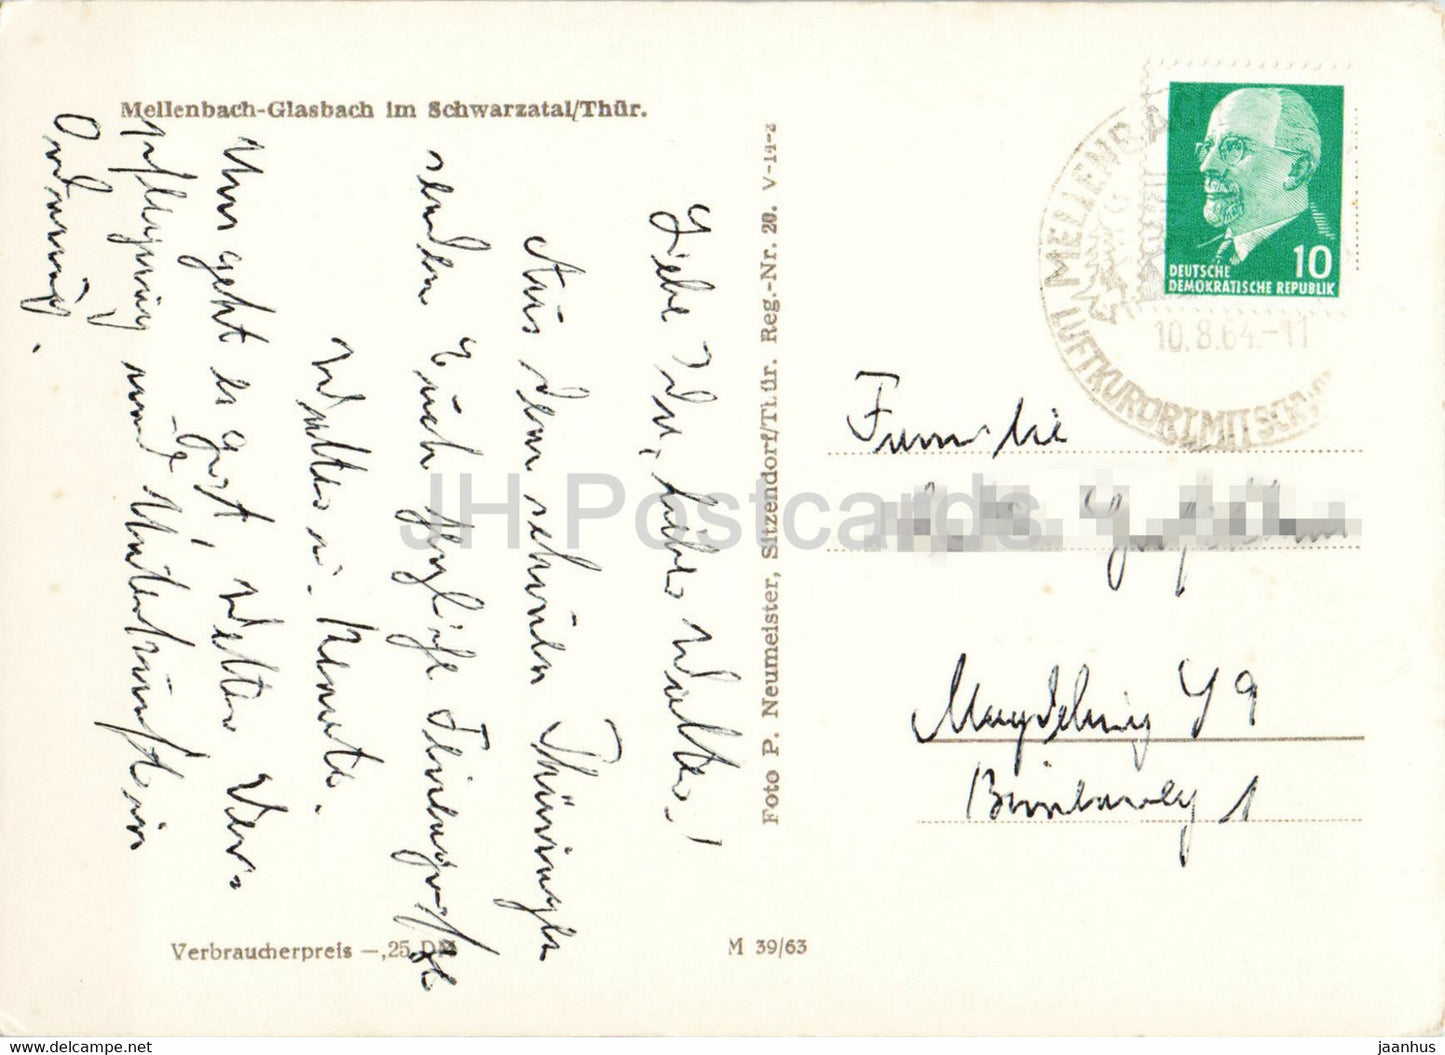 Mellenbach Glasbach im Schwarzatal - alte Postkarte - 1964 - Deutschland DDR - gebraucht